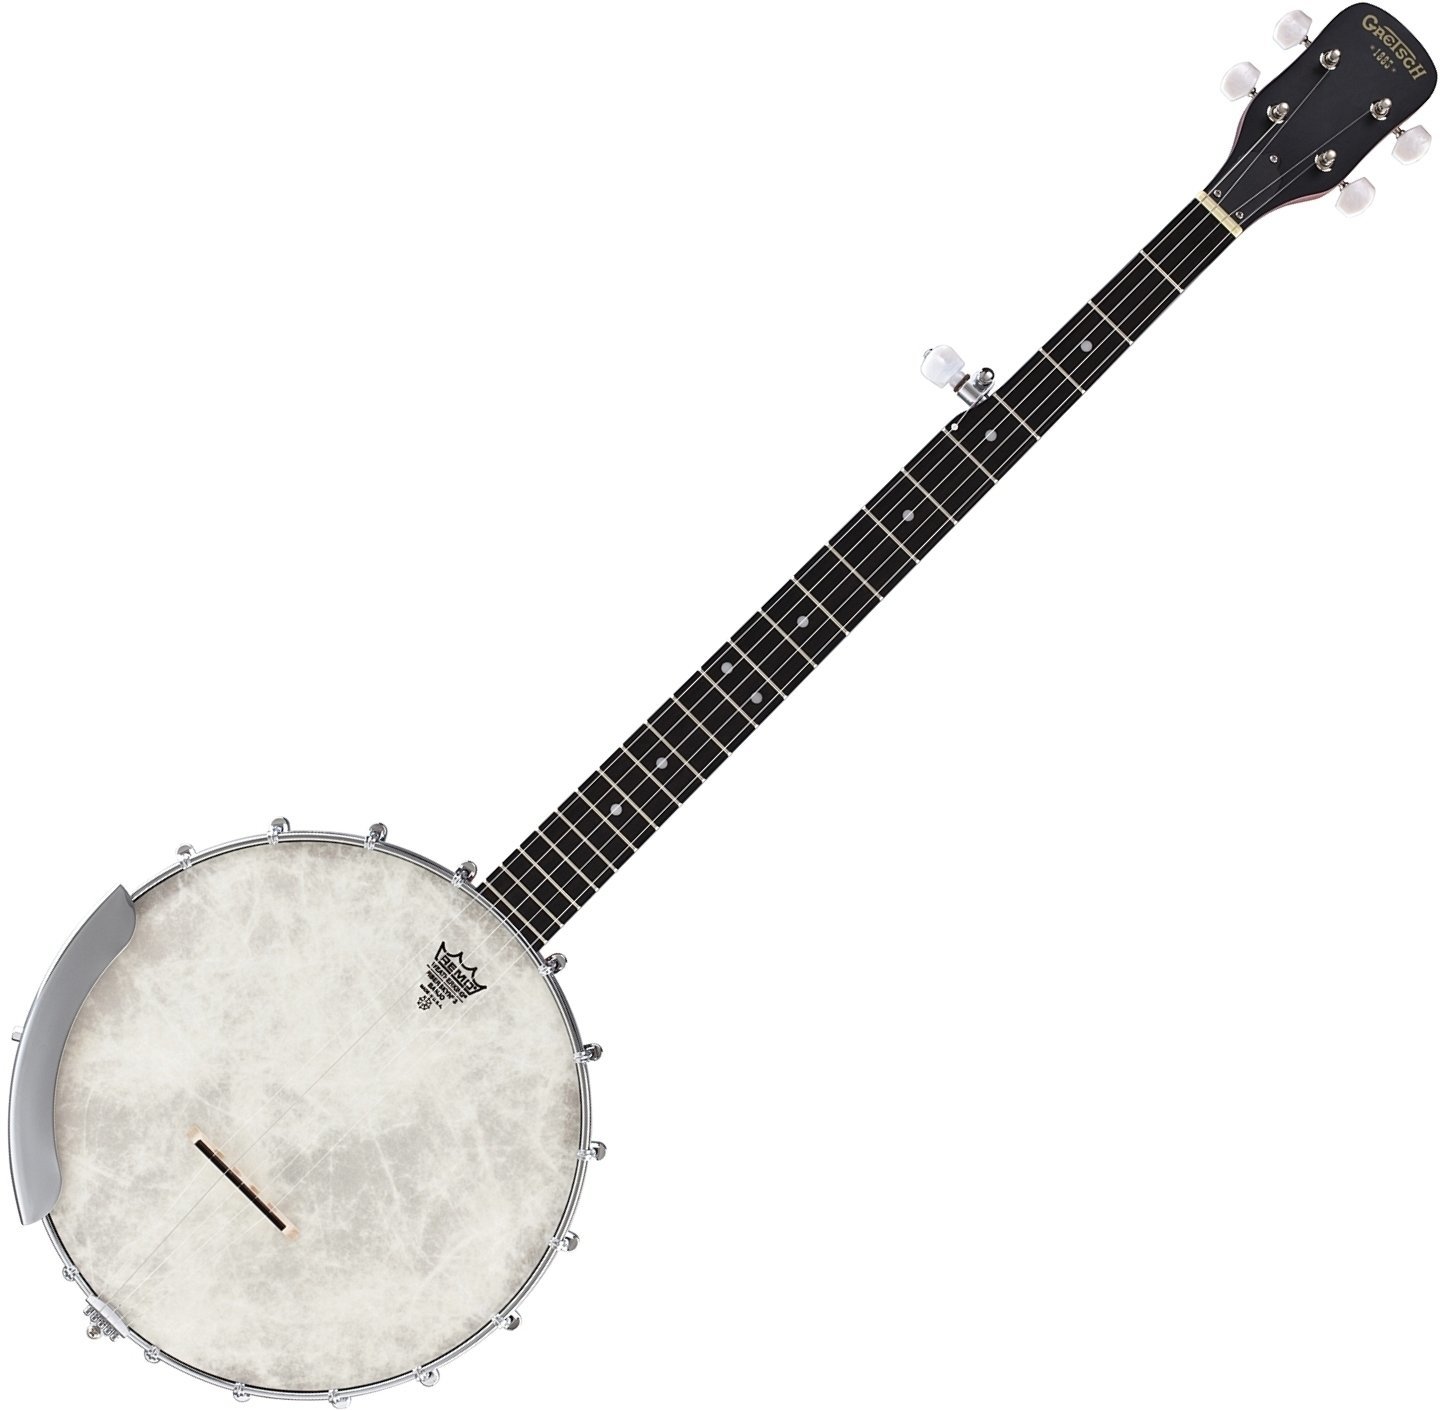 Μπάντζο Gretsch G9450 Dixie 5 String Open Back Banjo